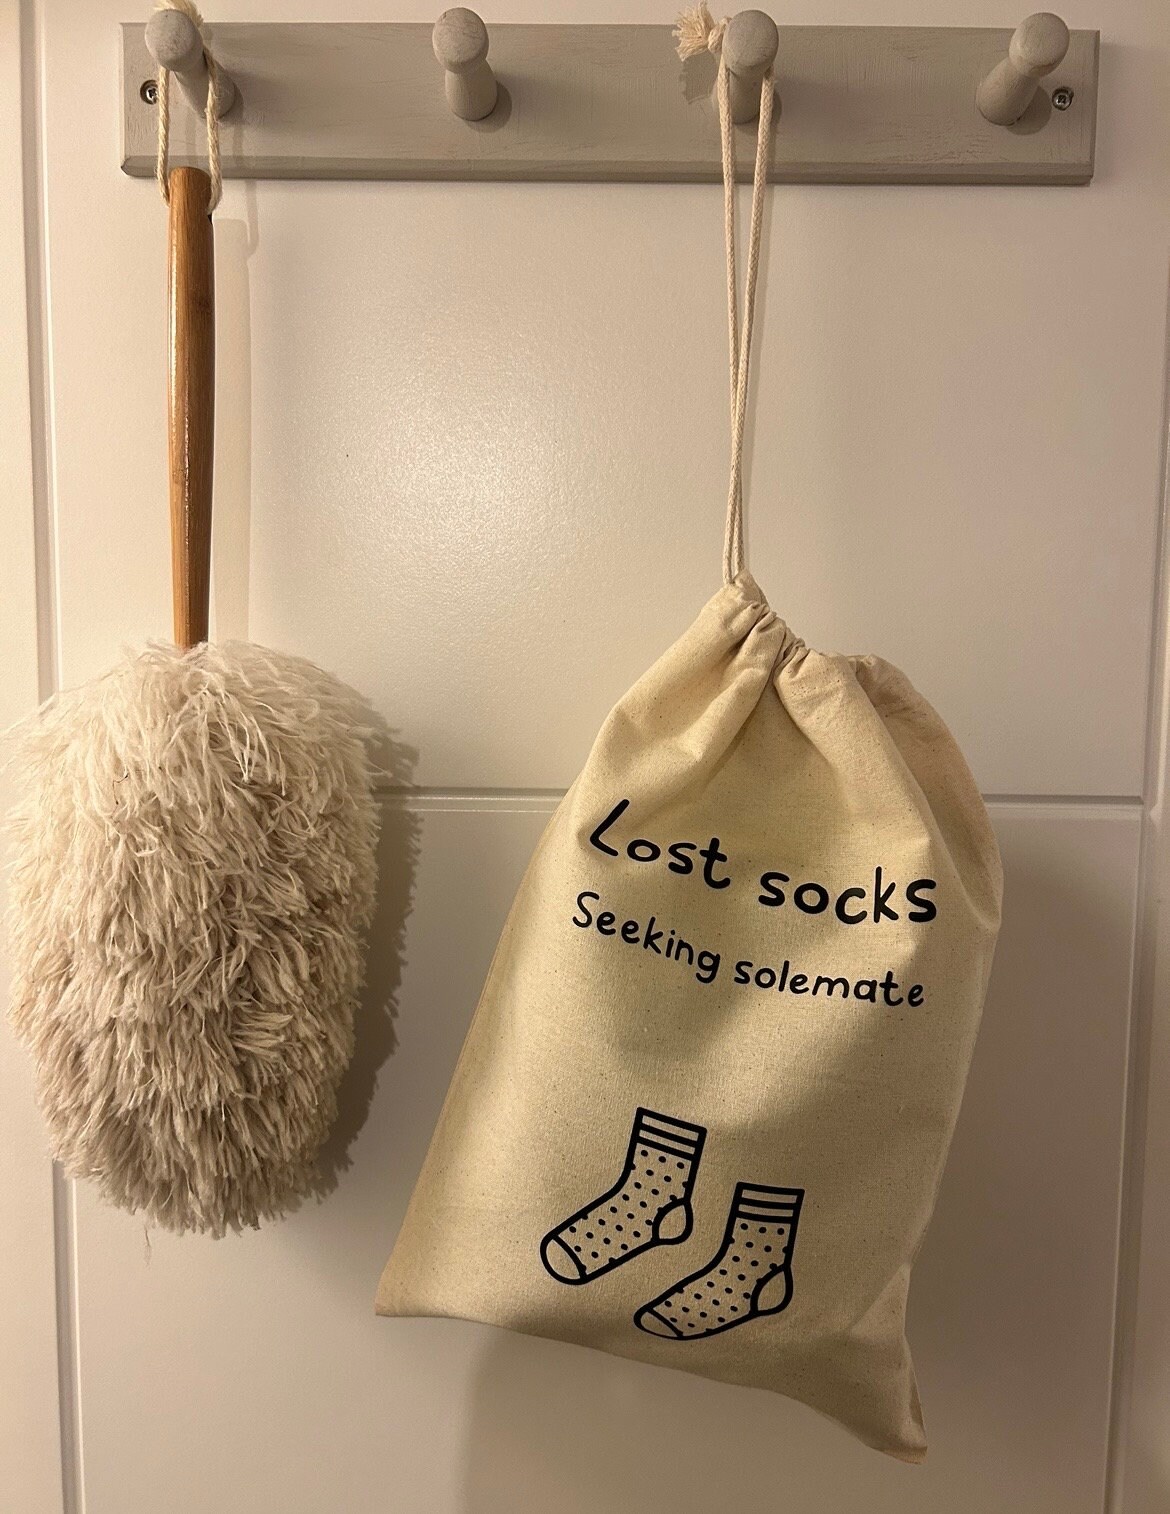 Washable bag for Socks